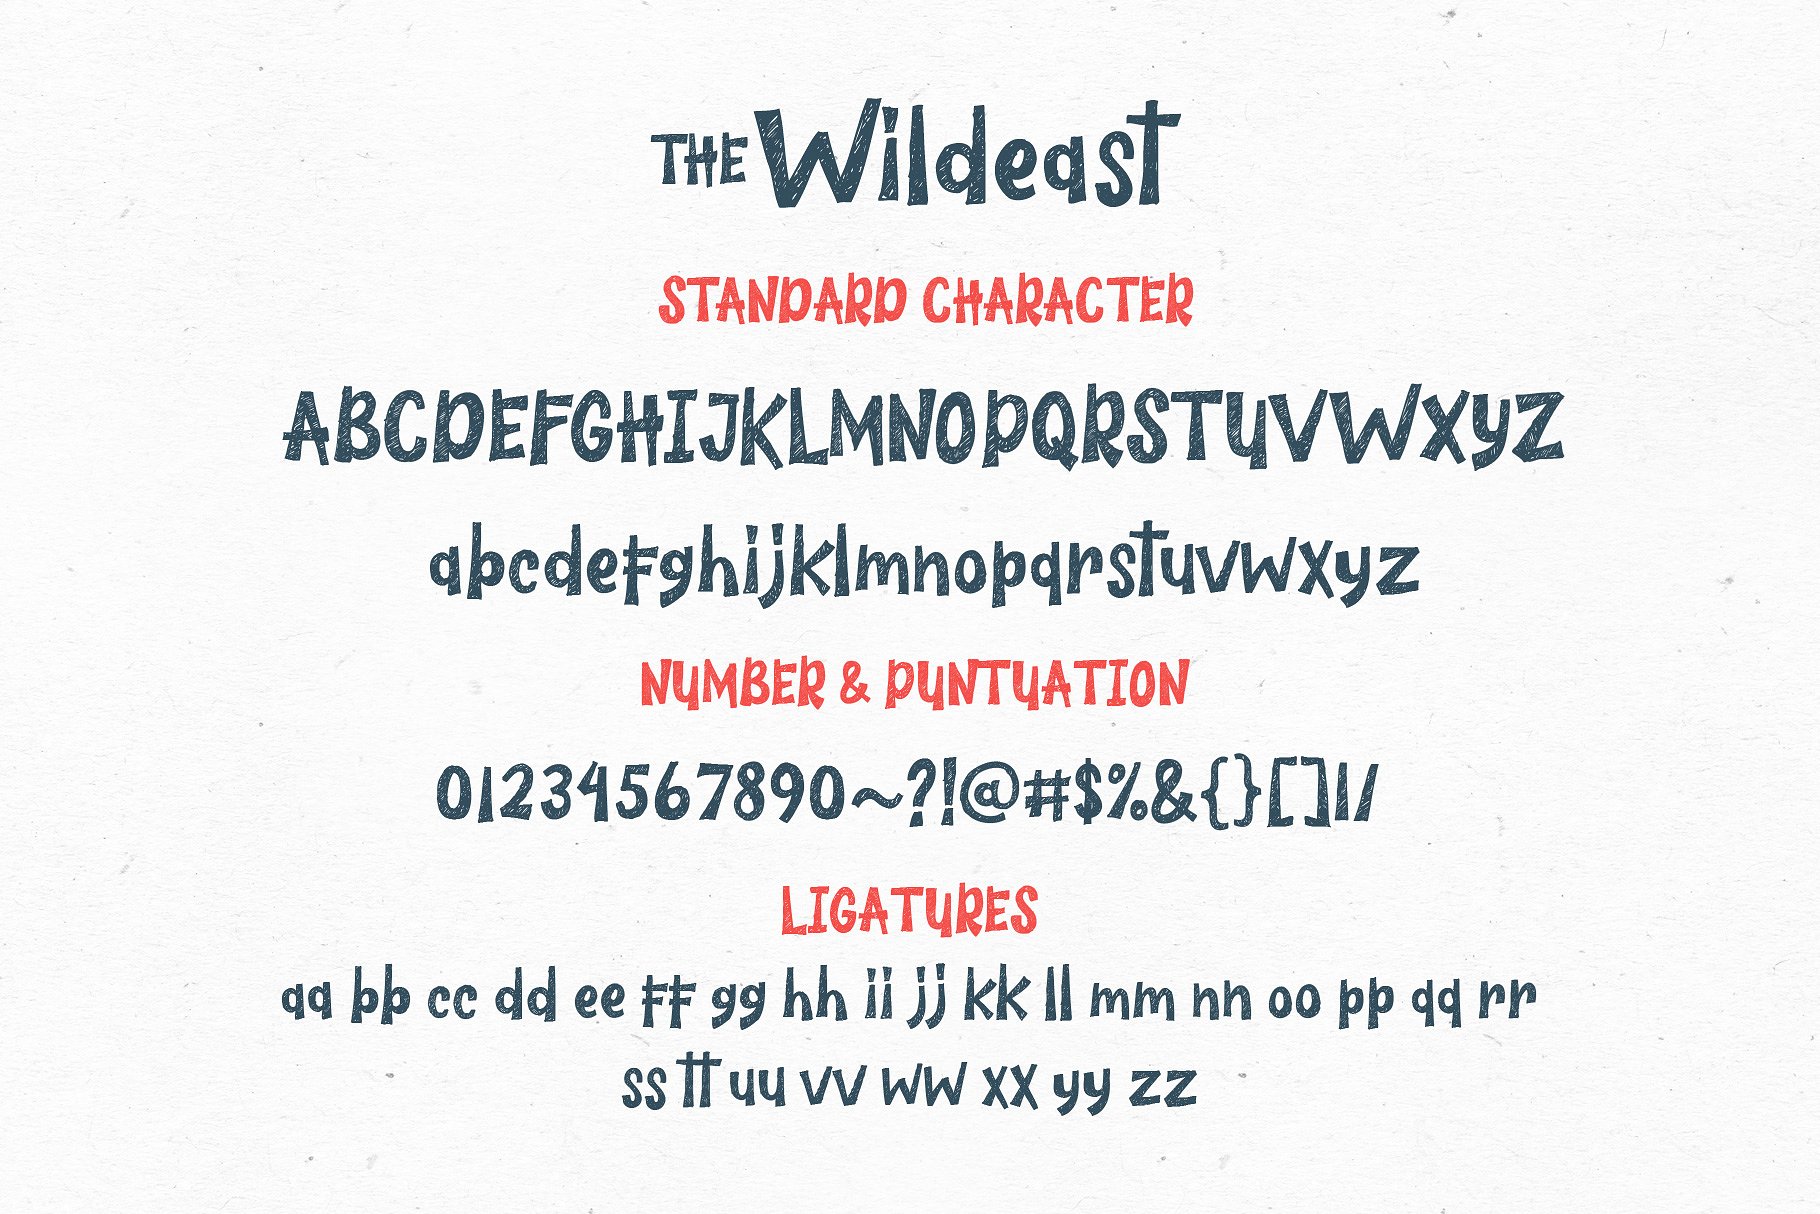 粗狂可爱的创意英文字体 The Wildeast Font